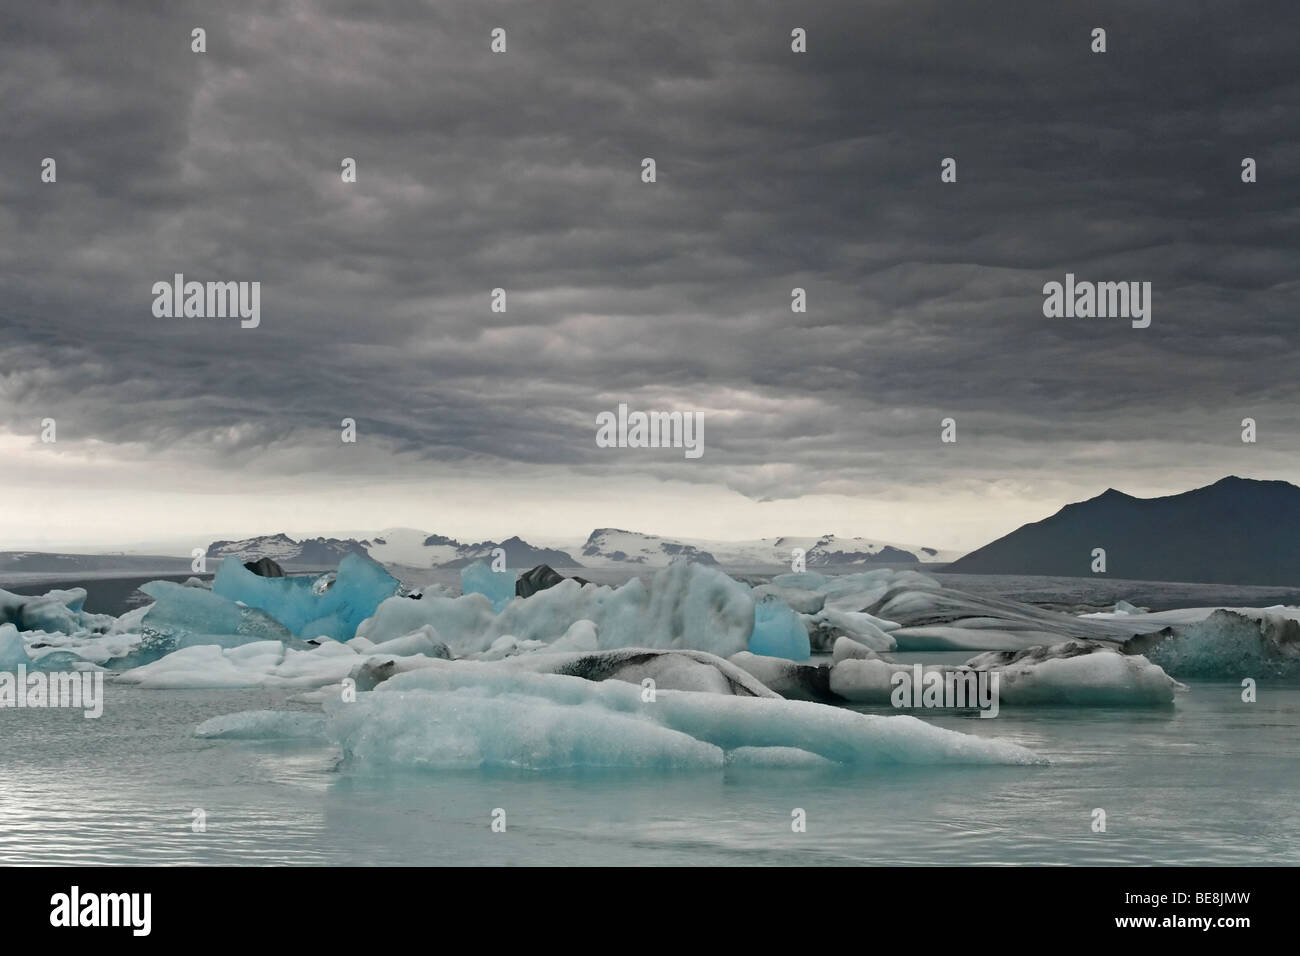 Jokulsarlon ijsbergenmeer met donkere lucht, jokulsarlon glacier lake with dark sky Stock Photo